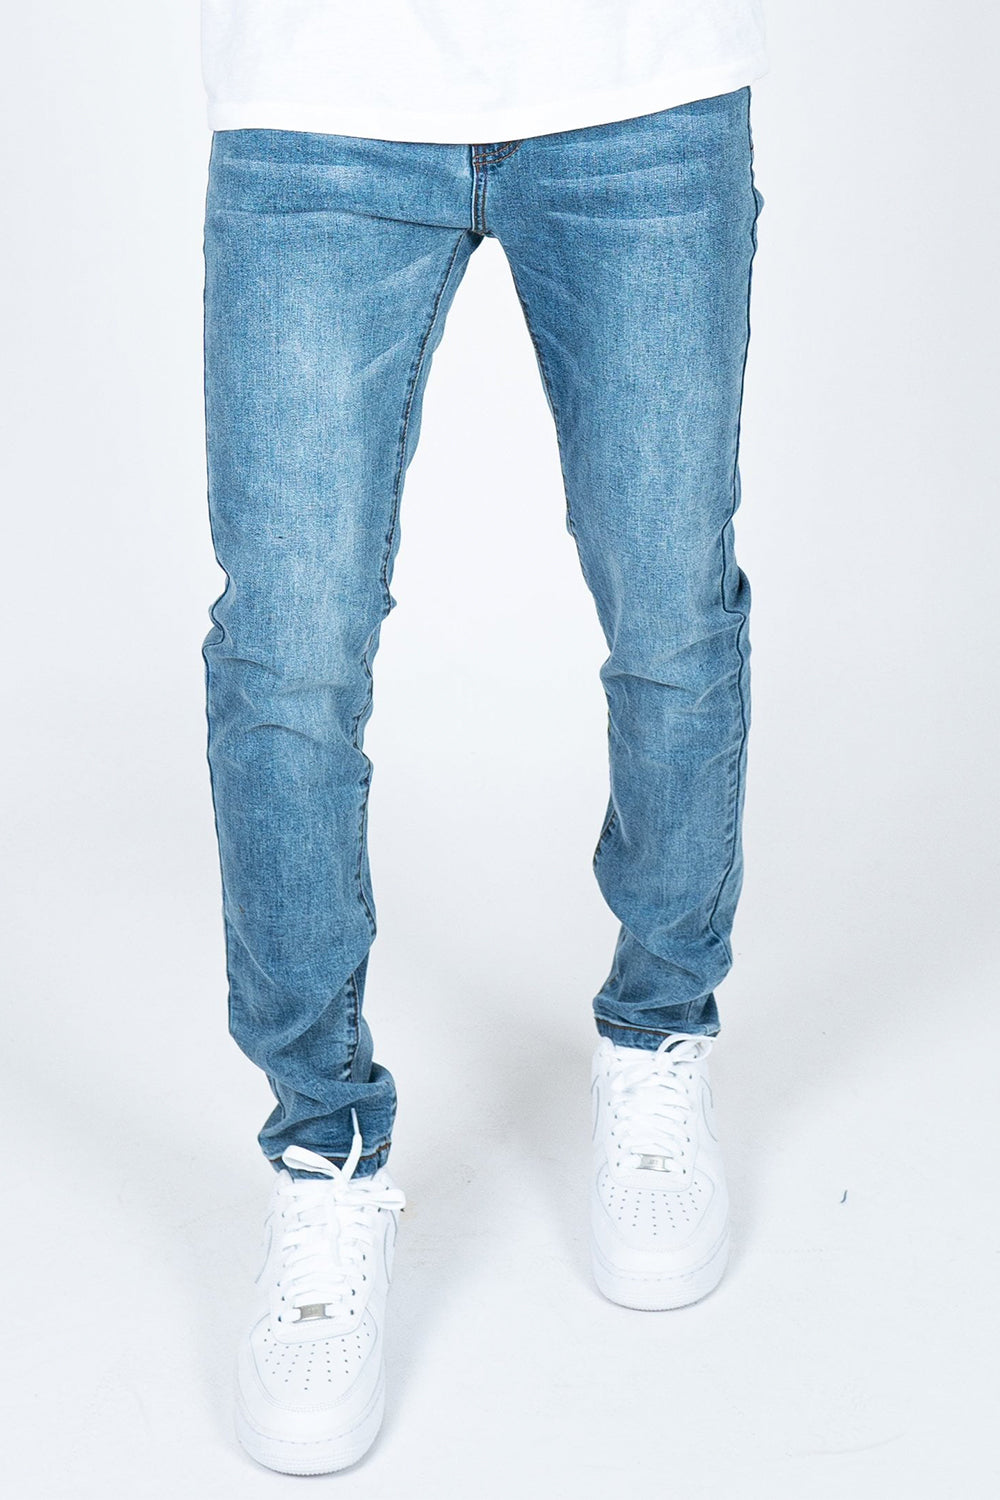 Logan Clean Skinny Jeans in Vintage Wash Denim